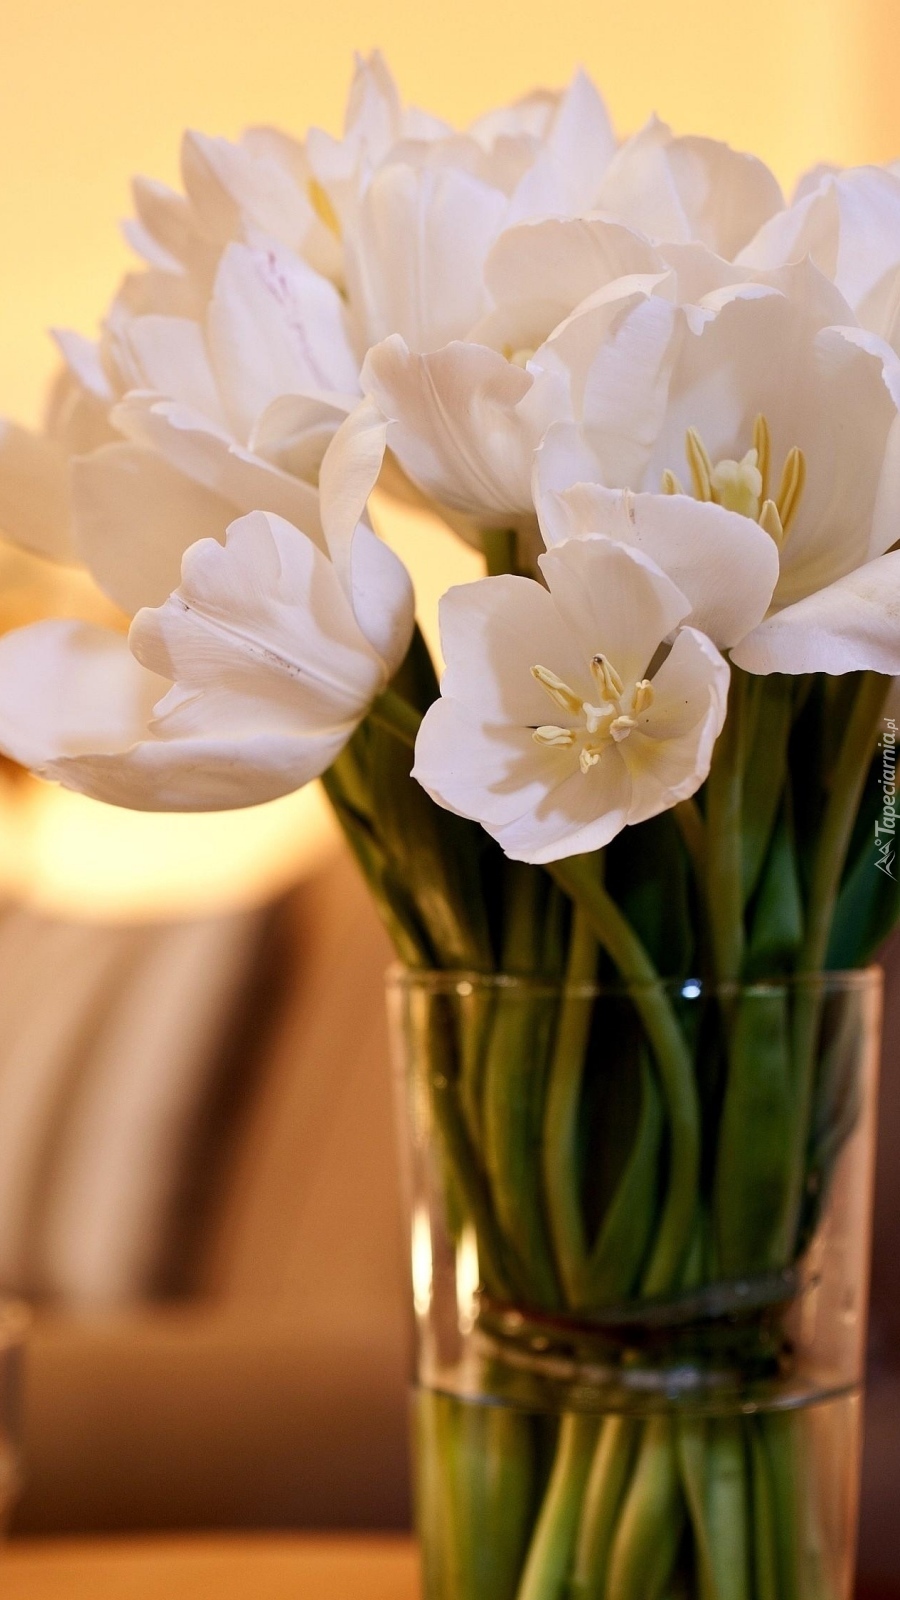 Bukiet białych tulipanów w szklanym wazonie